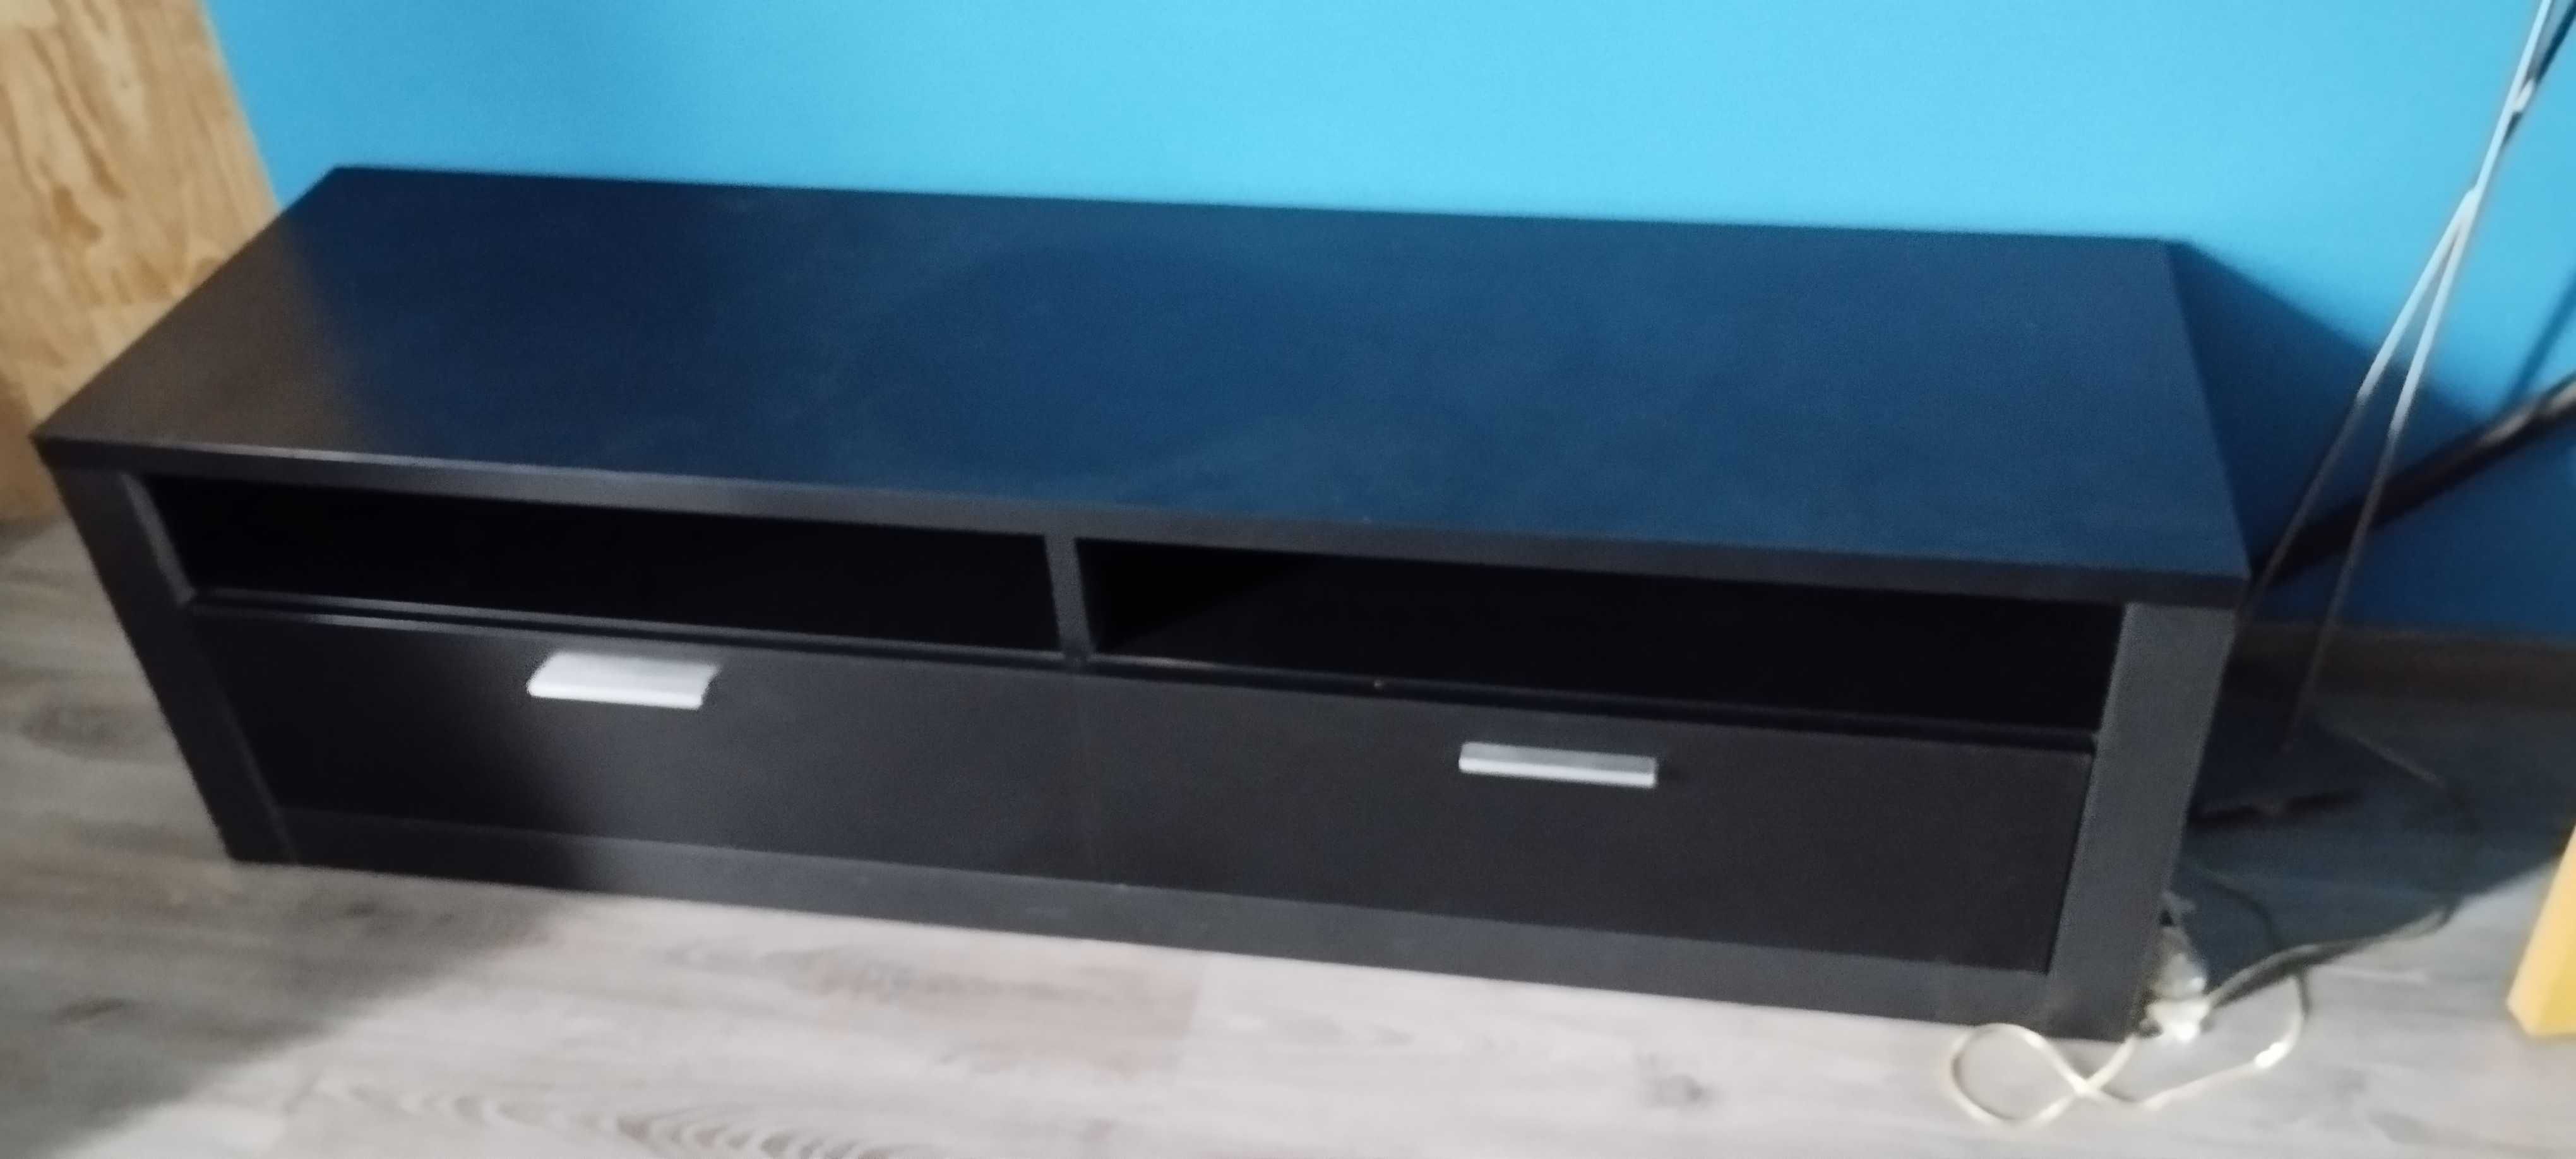 Armário TV de cor preta , praticamente novo de 1,60 cm